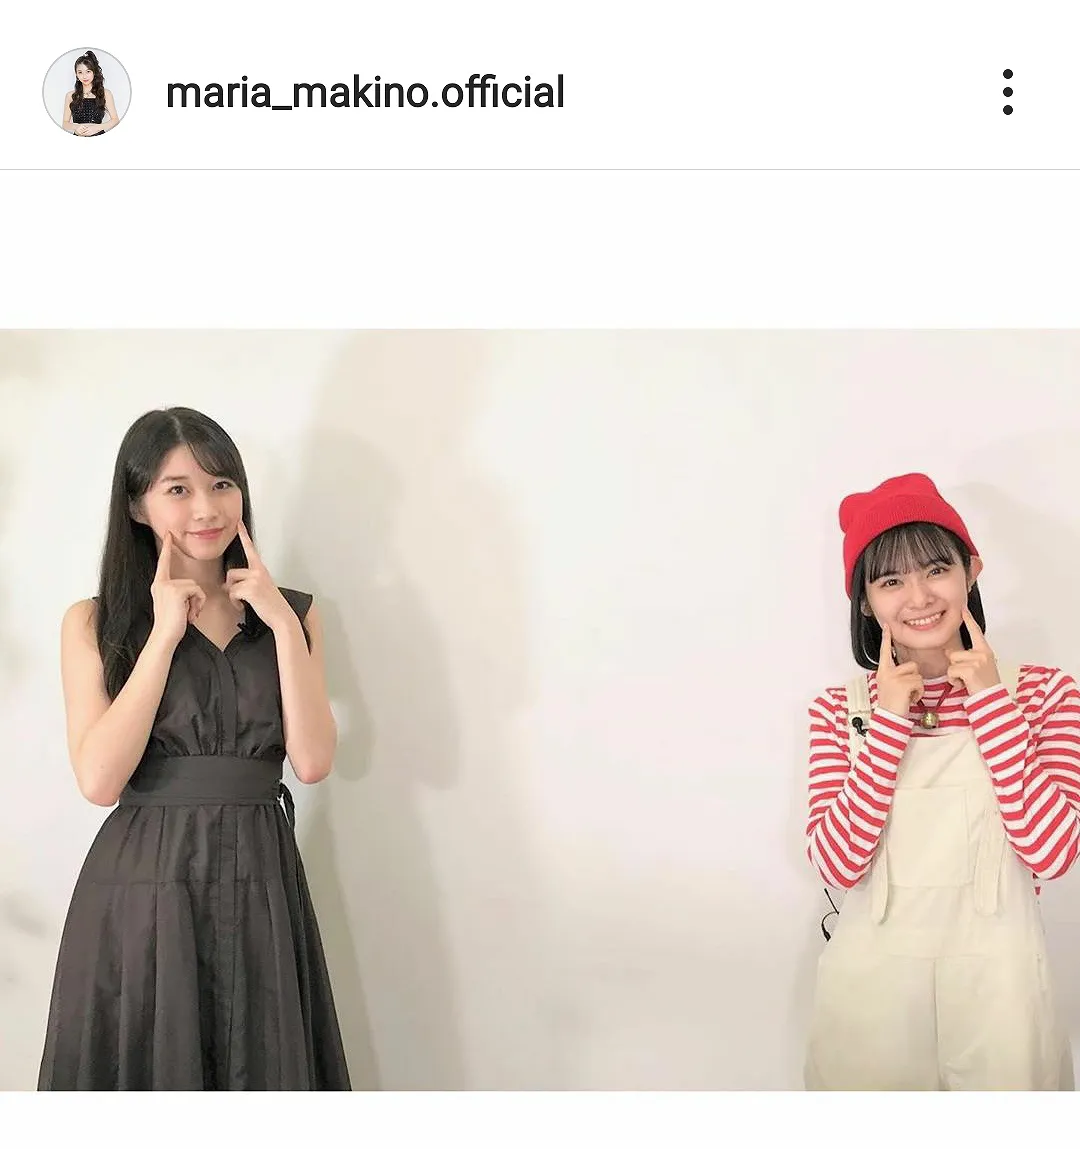 ※画像は牧野真莉愛(maria_makino.official)公式Instagramのスクリーンショット